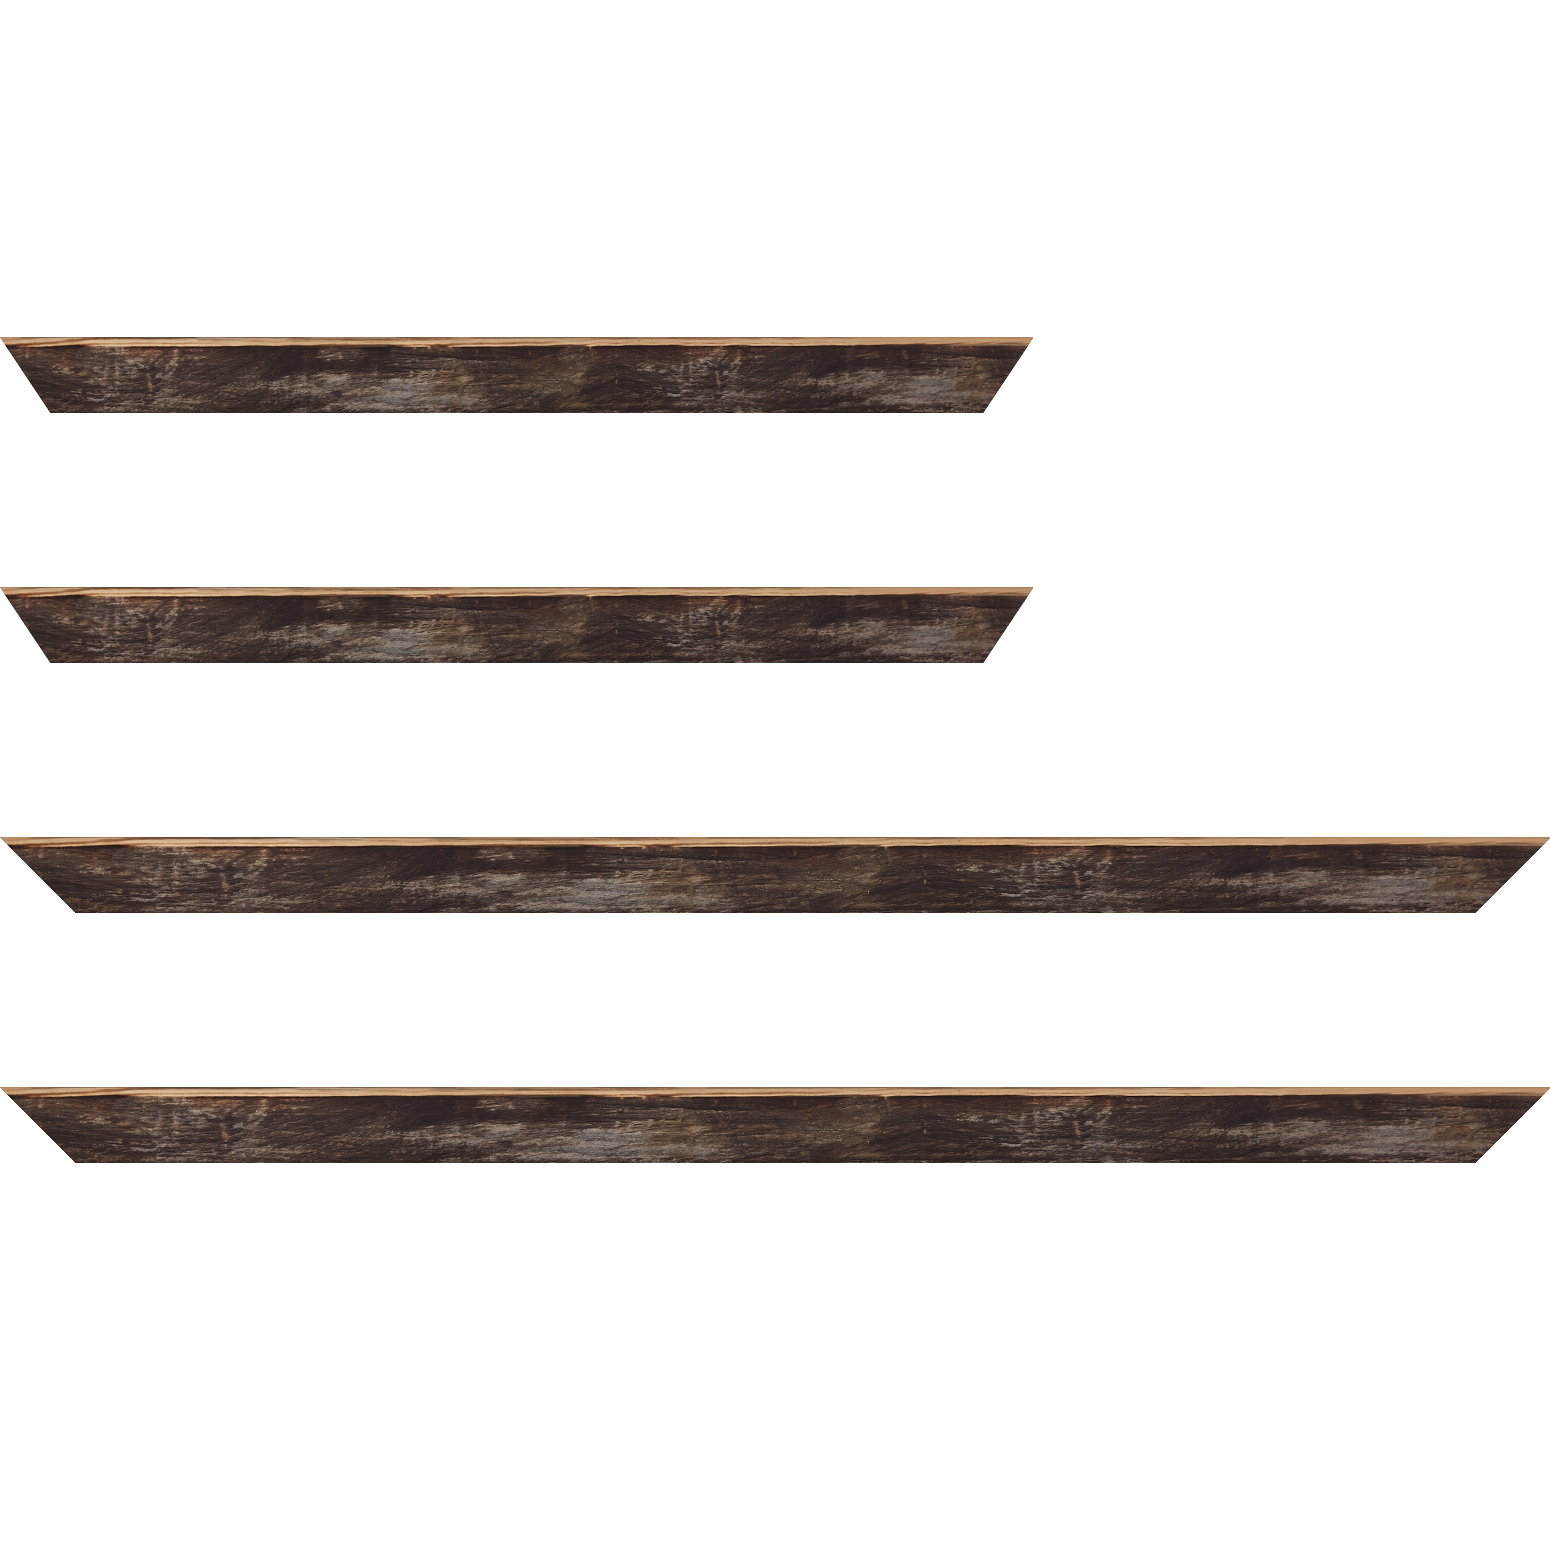 Baguette bois profil arrondi en pente plongeant largeur 2.4cm couleur noir ébène effet ressuyé, angle du cadre extérieur filet naturel - 24x30